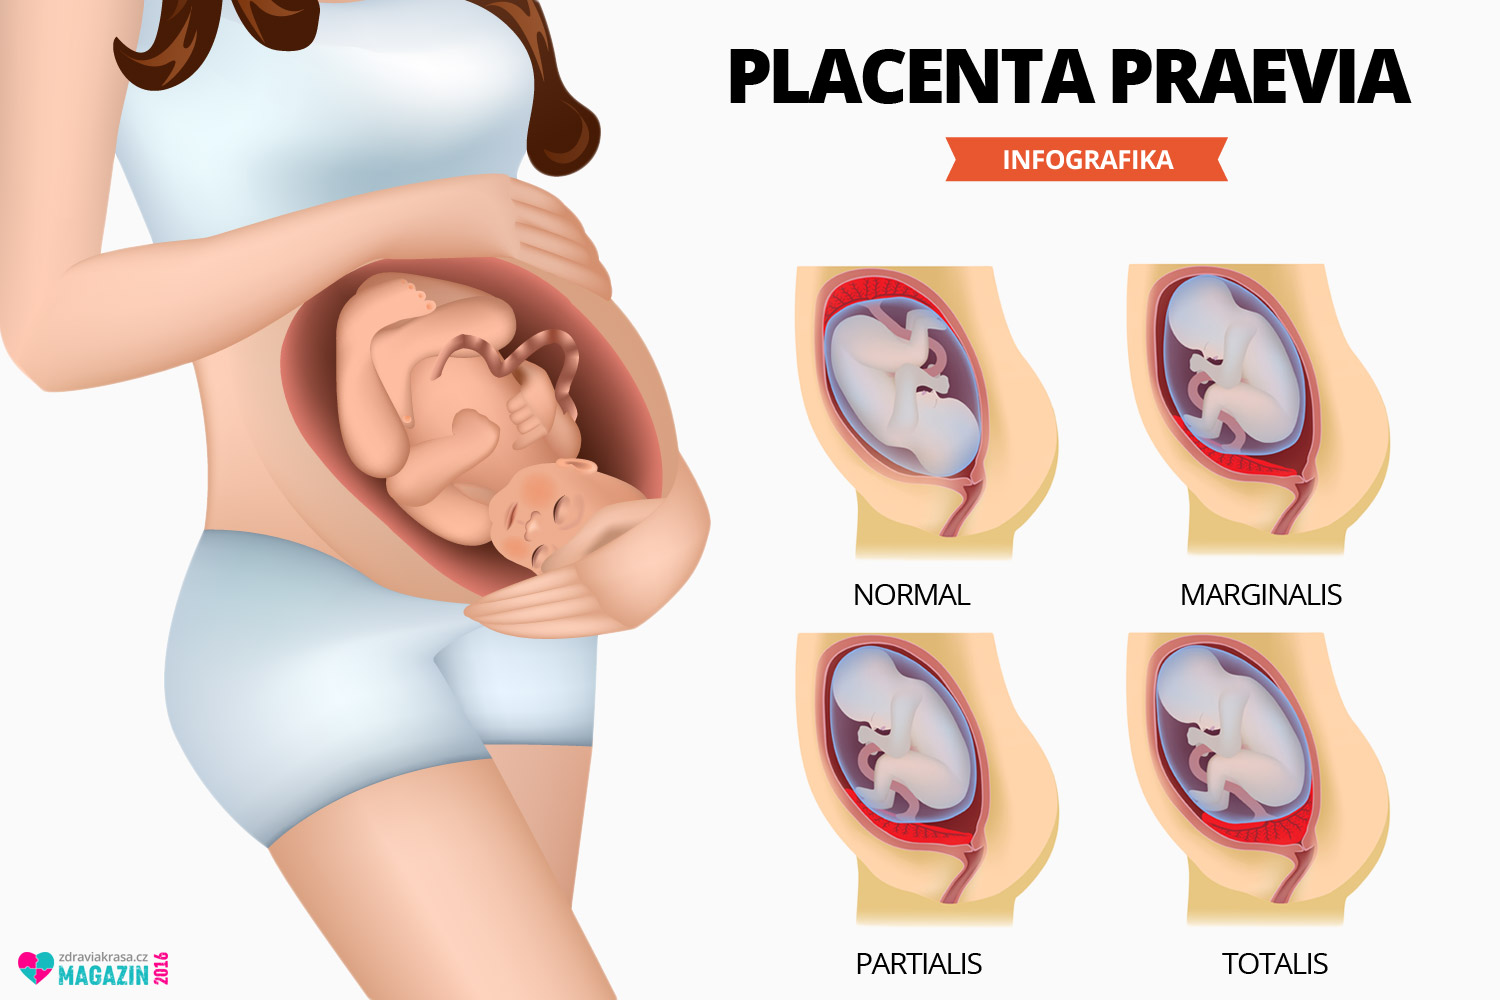 Placenta je umístěná na děložní stěně obvykle vepředu, vzadu nebo nahoře. Ke komplikaci dochází, pokud je umístěná dolu v děložním fundu (těle). V této poloze často zasahuje, nebo zcela překrývá vchod do porodních cest a brání tak standardnímu vaginálnímu porodu. Na obrázku vidíte normální umístění placenty bez komplikací. 